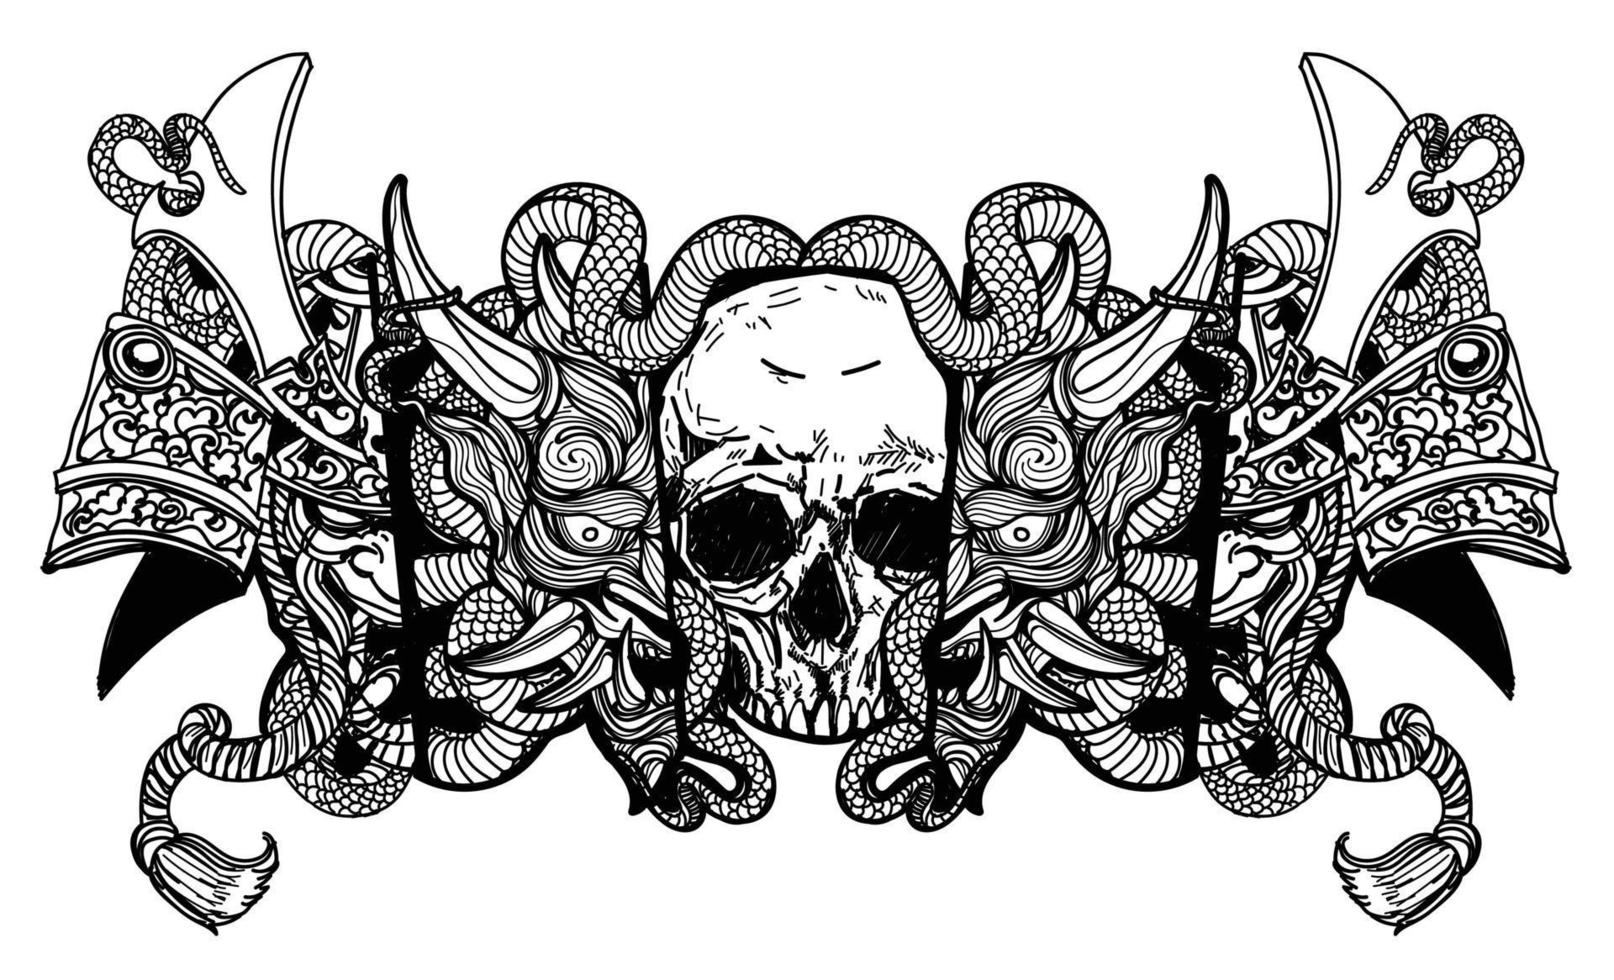 arte del tatuaje cráneo diablo máscara y dibujo de serpiente boceto en blanco y negro vector